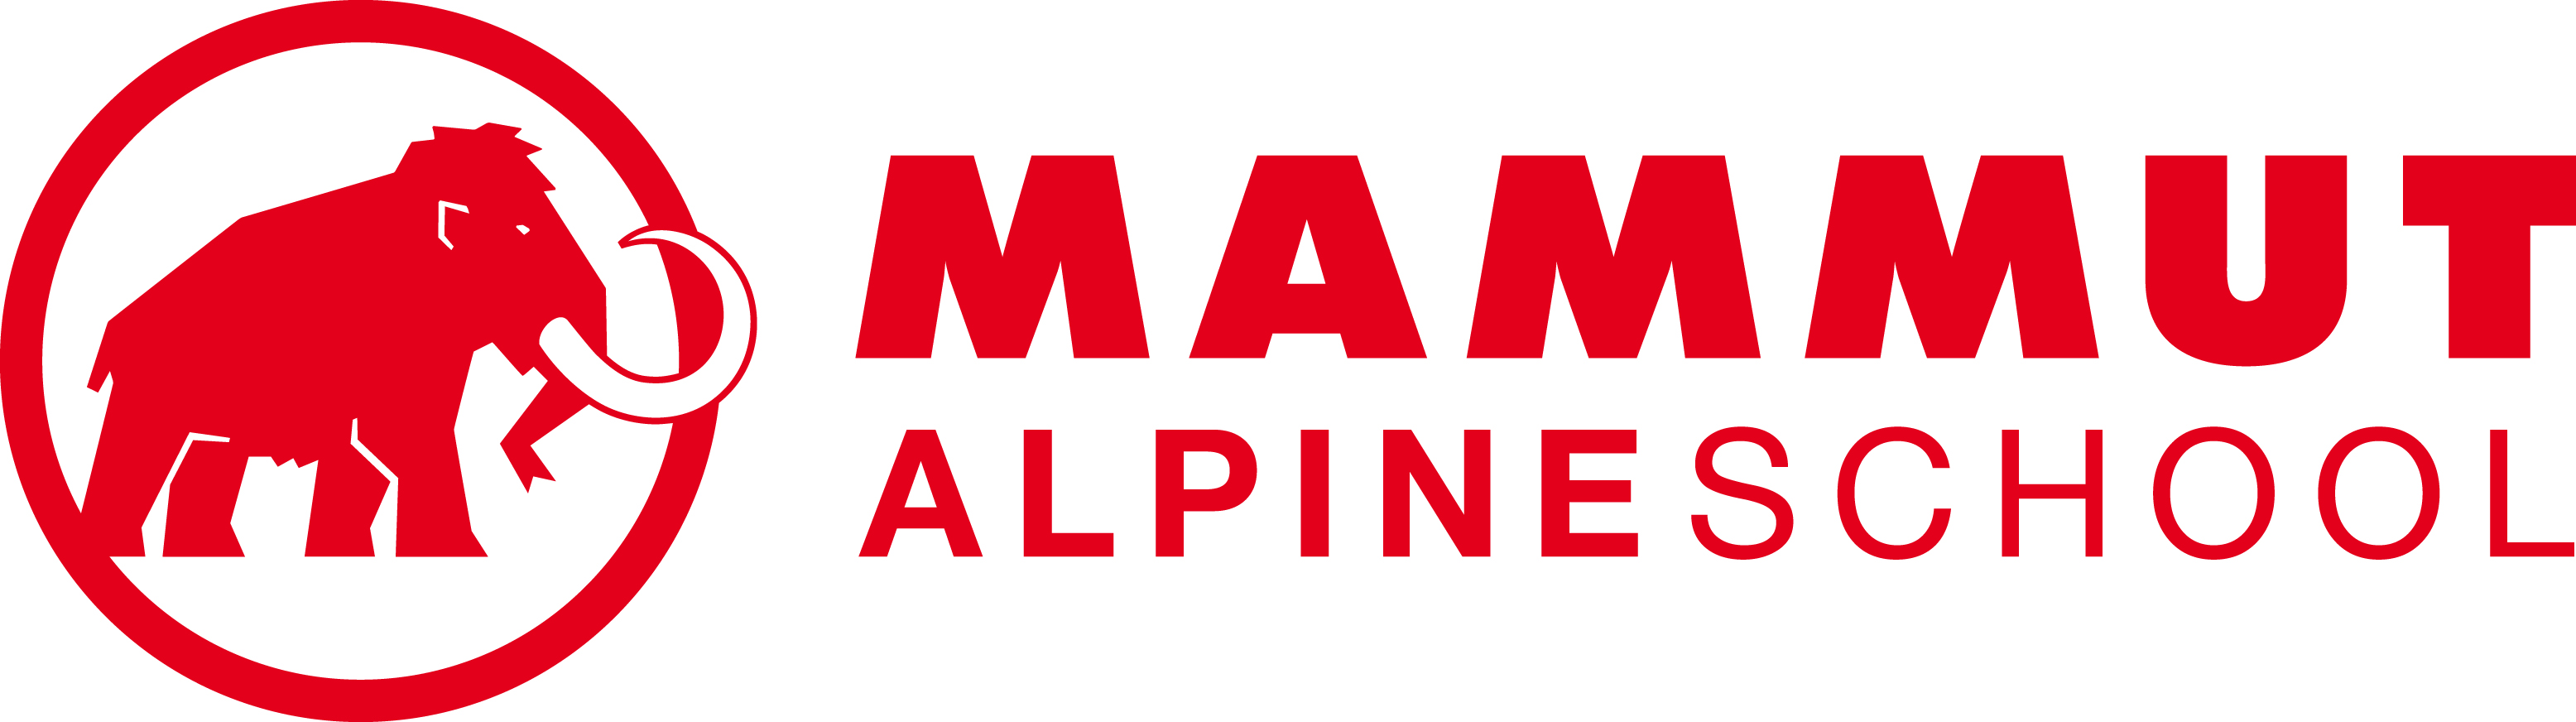 Mammut Alpineschool Logo